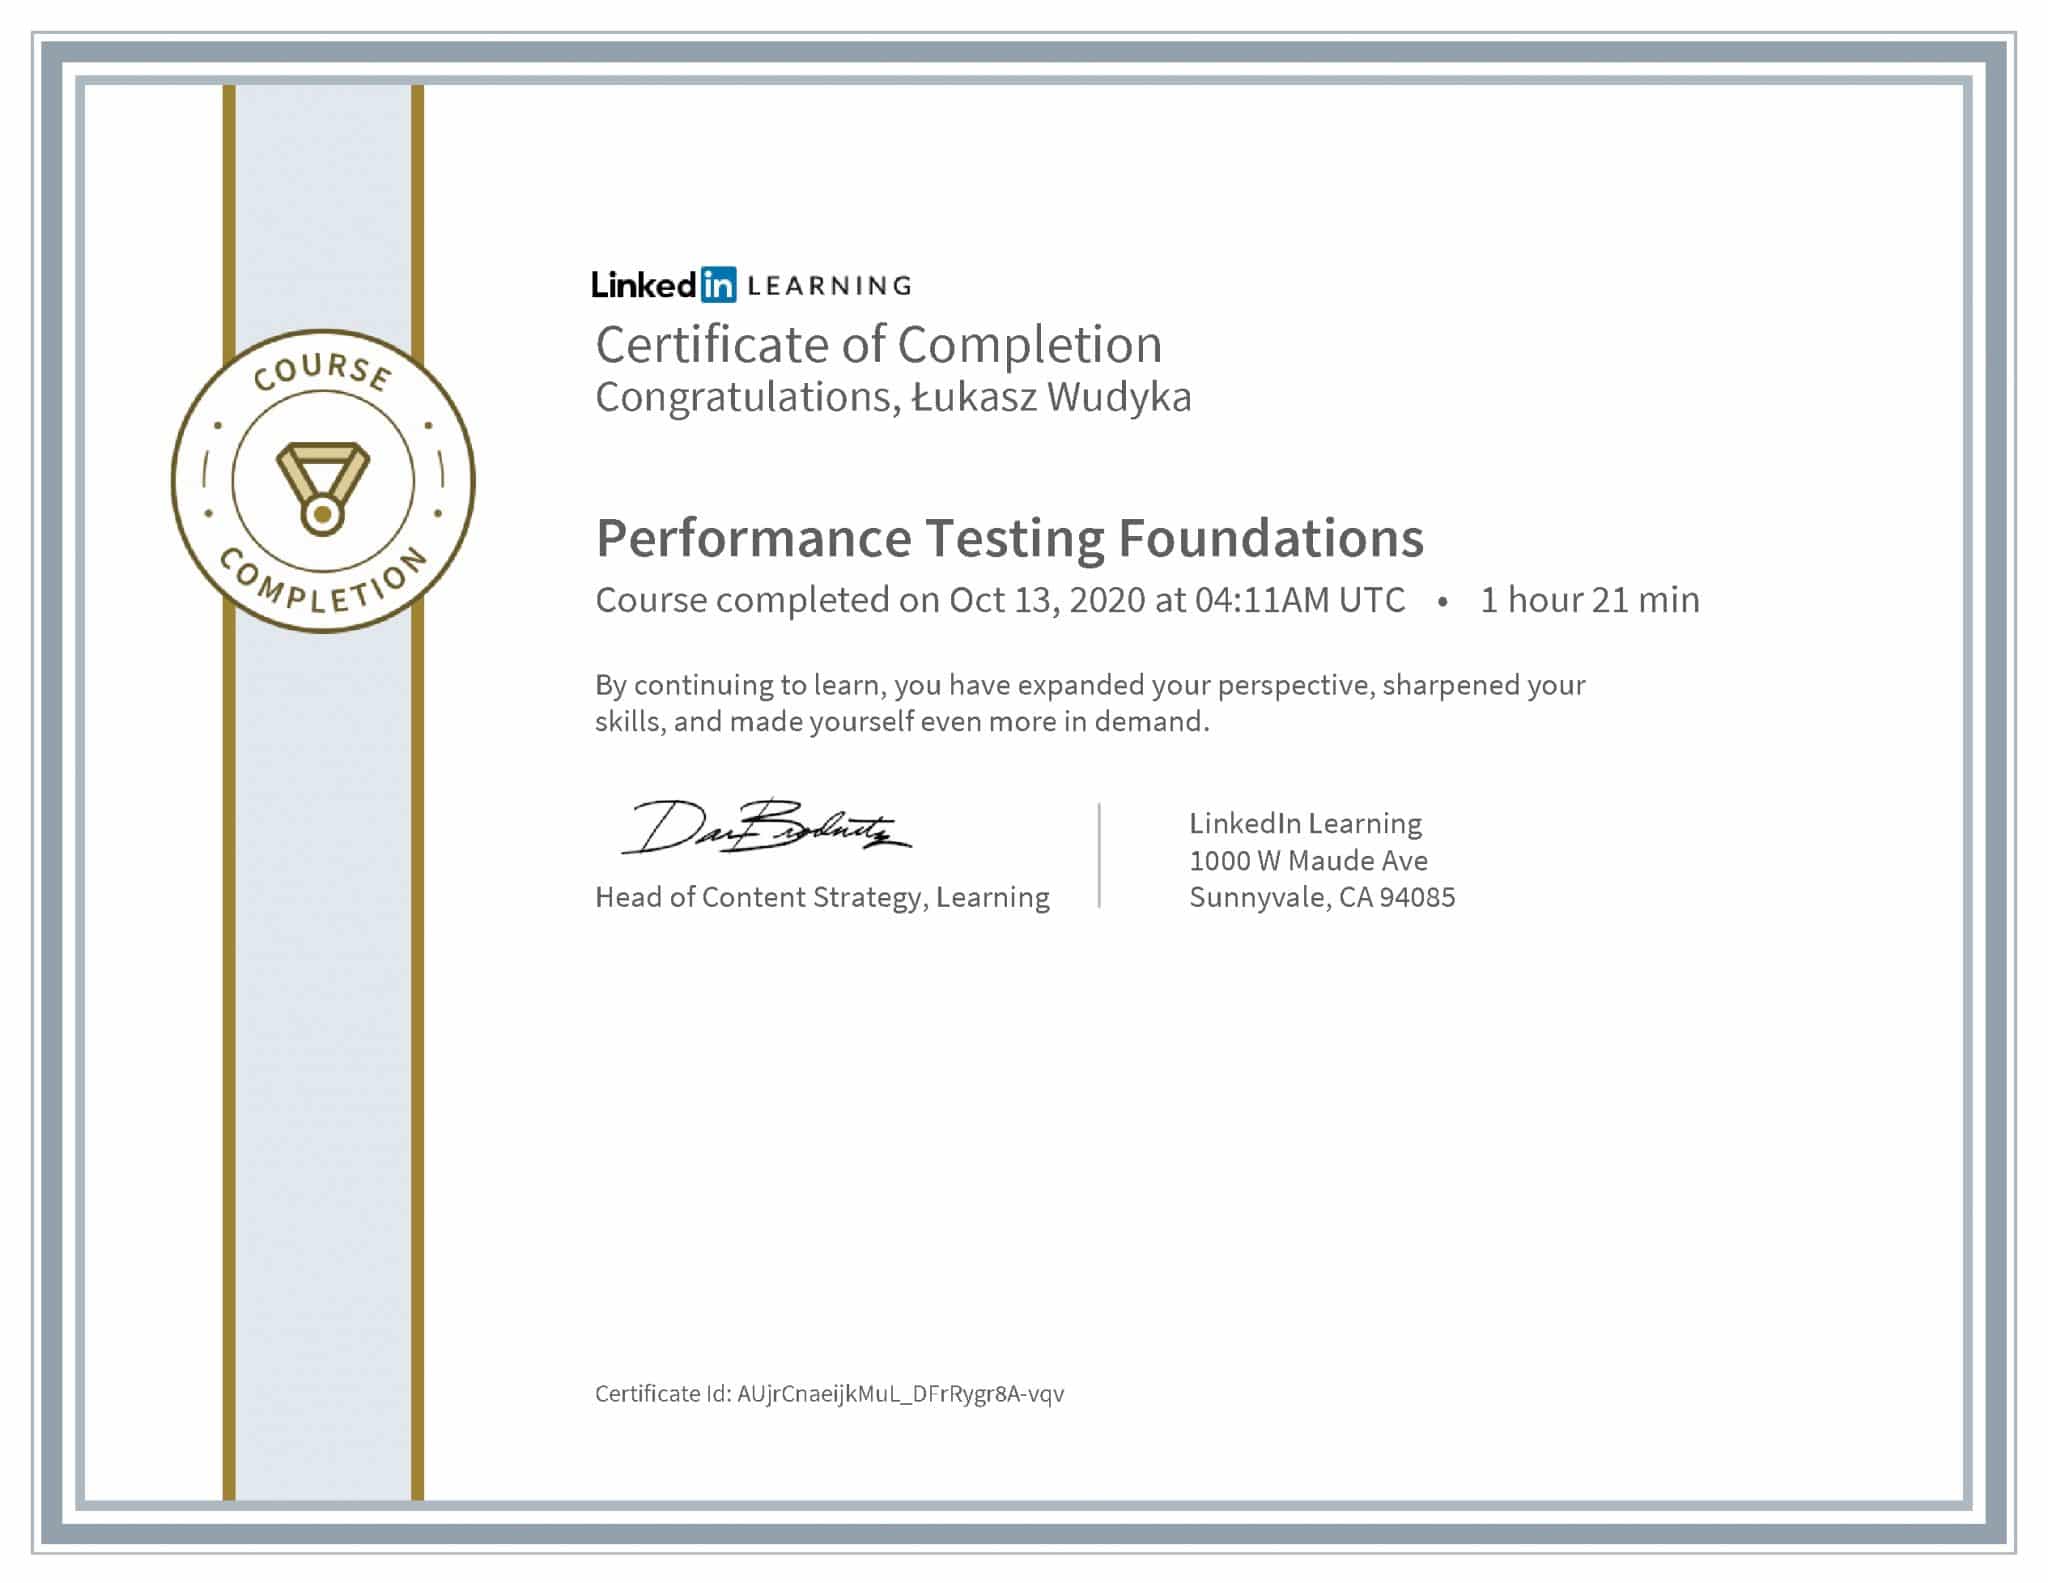 Łukasz Wudyka certyfikat LinkedIn Performance Testing Foundations